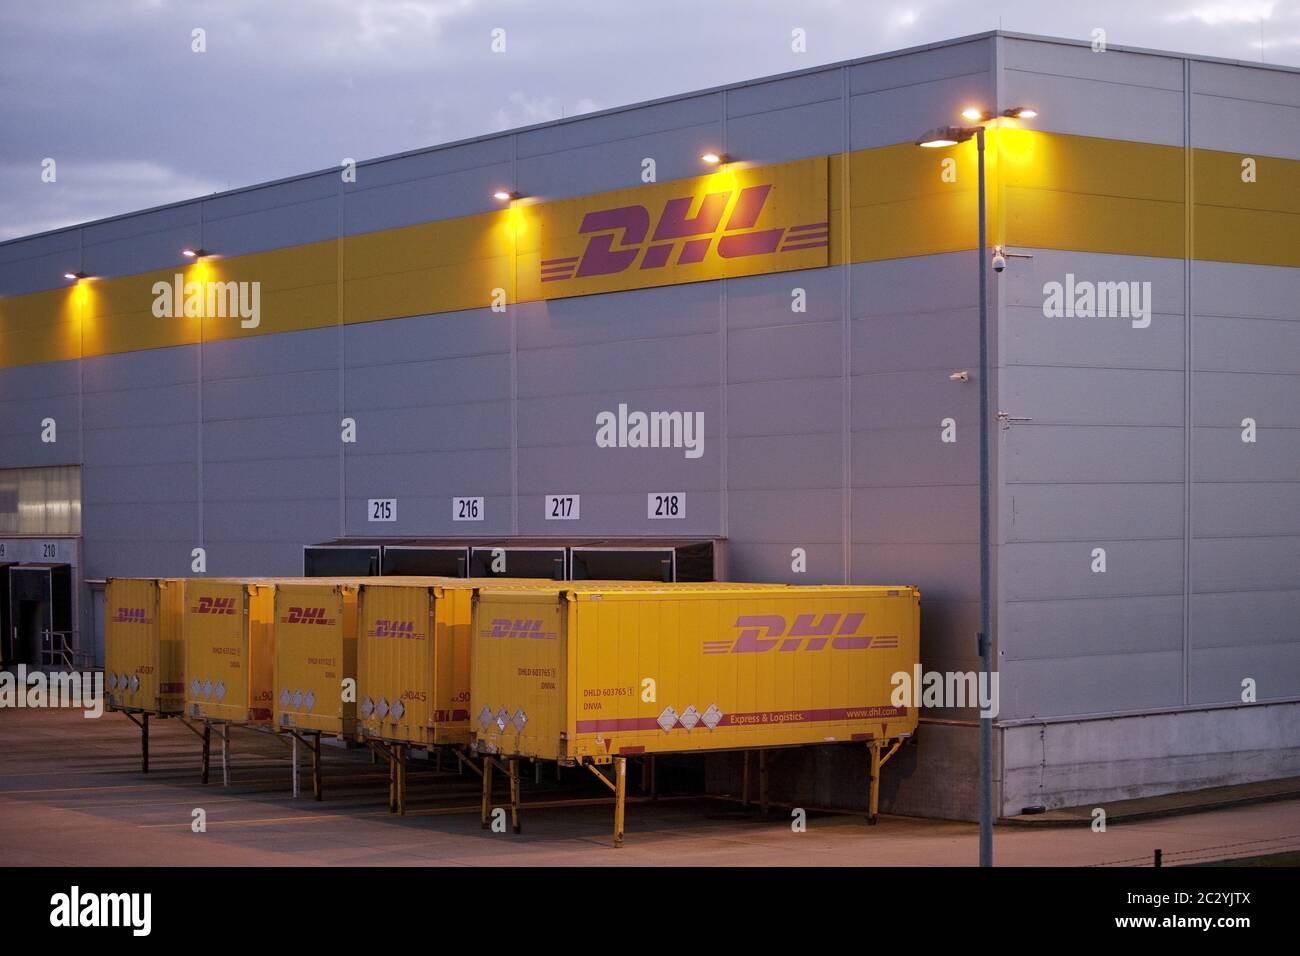 Centre de distribution DHL près d'Amazon Logistics Center, crépuscule, Rheinsberg, Allemagne, Europe Banque D'Images